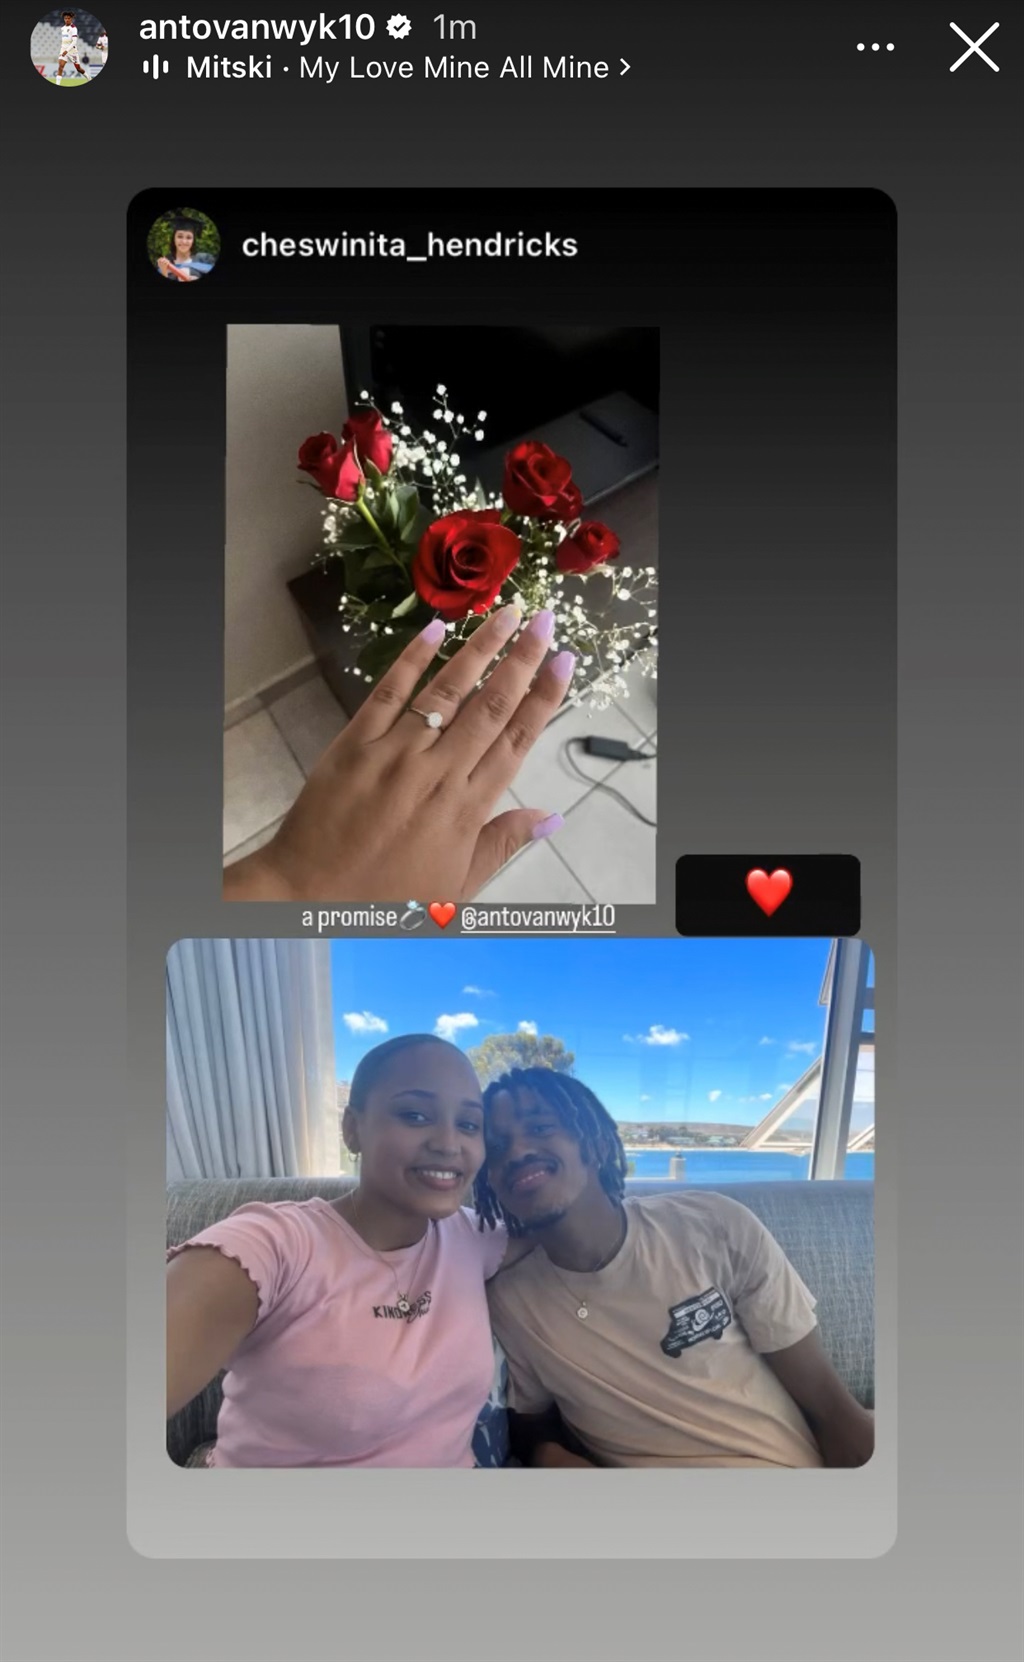 Antonio van Wyk gave his girlfriend a promise ring